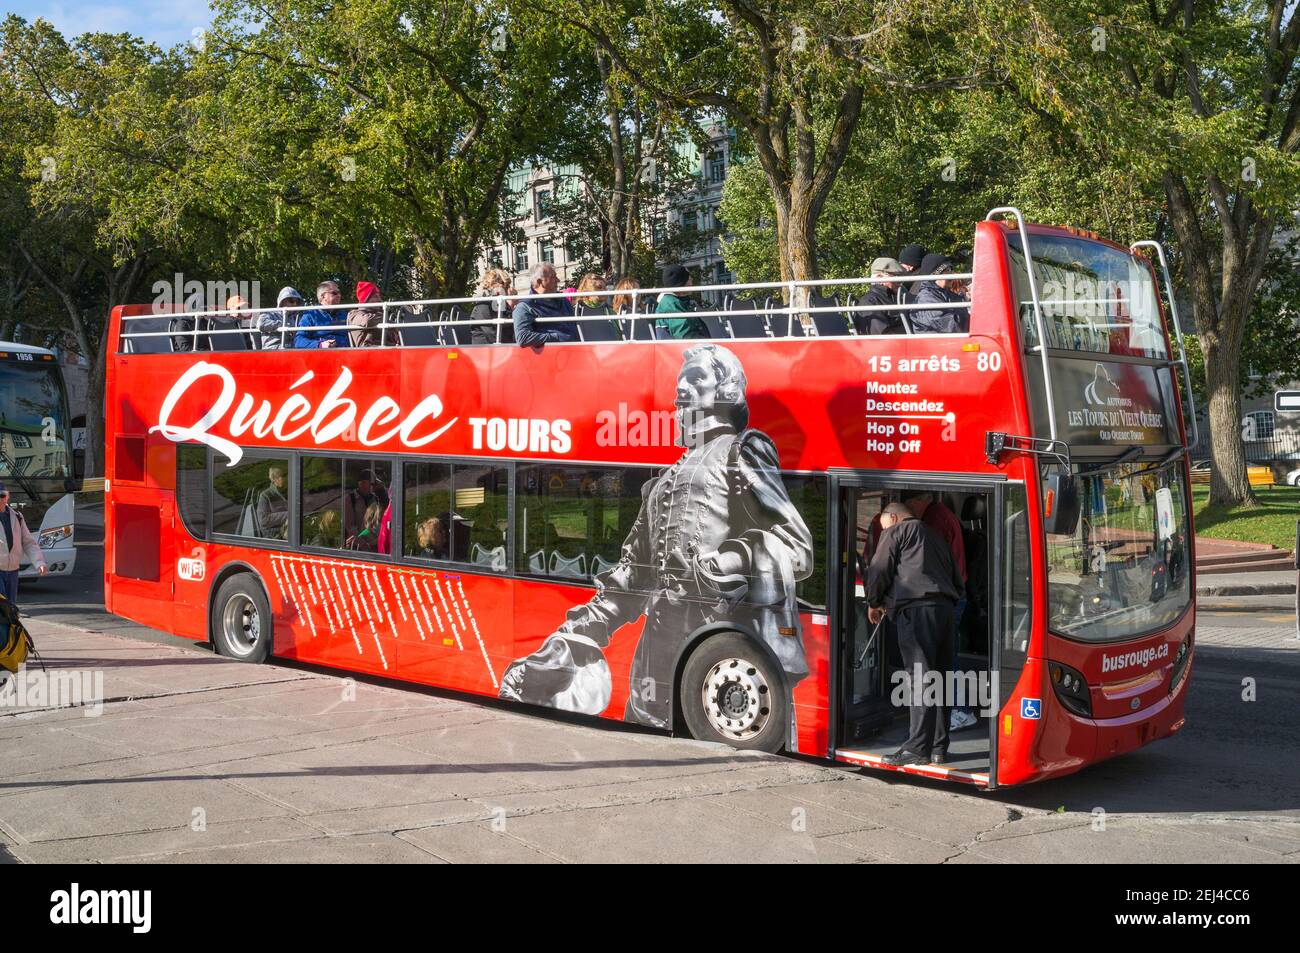 A Quebec tours double deck open top tour bus or busrouge, Québec City, Canada Stock Photo